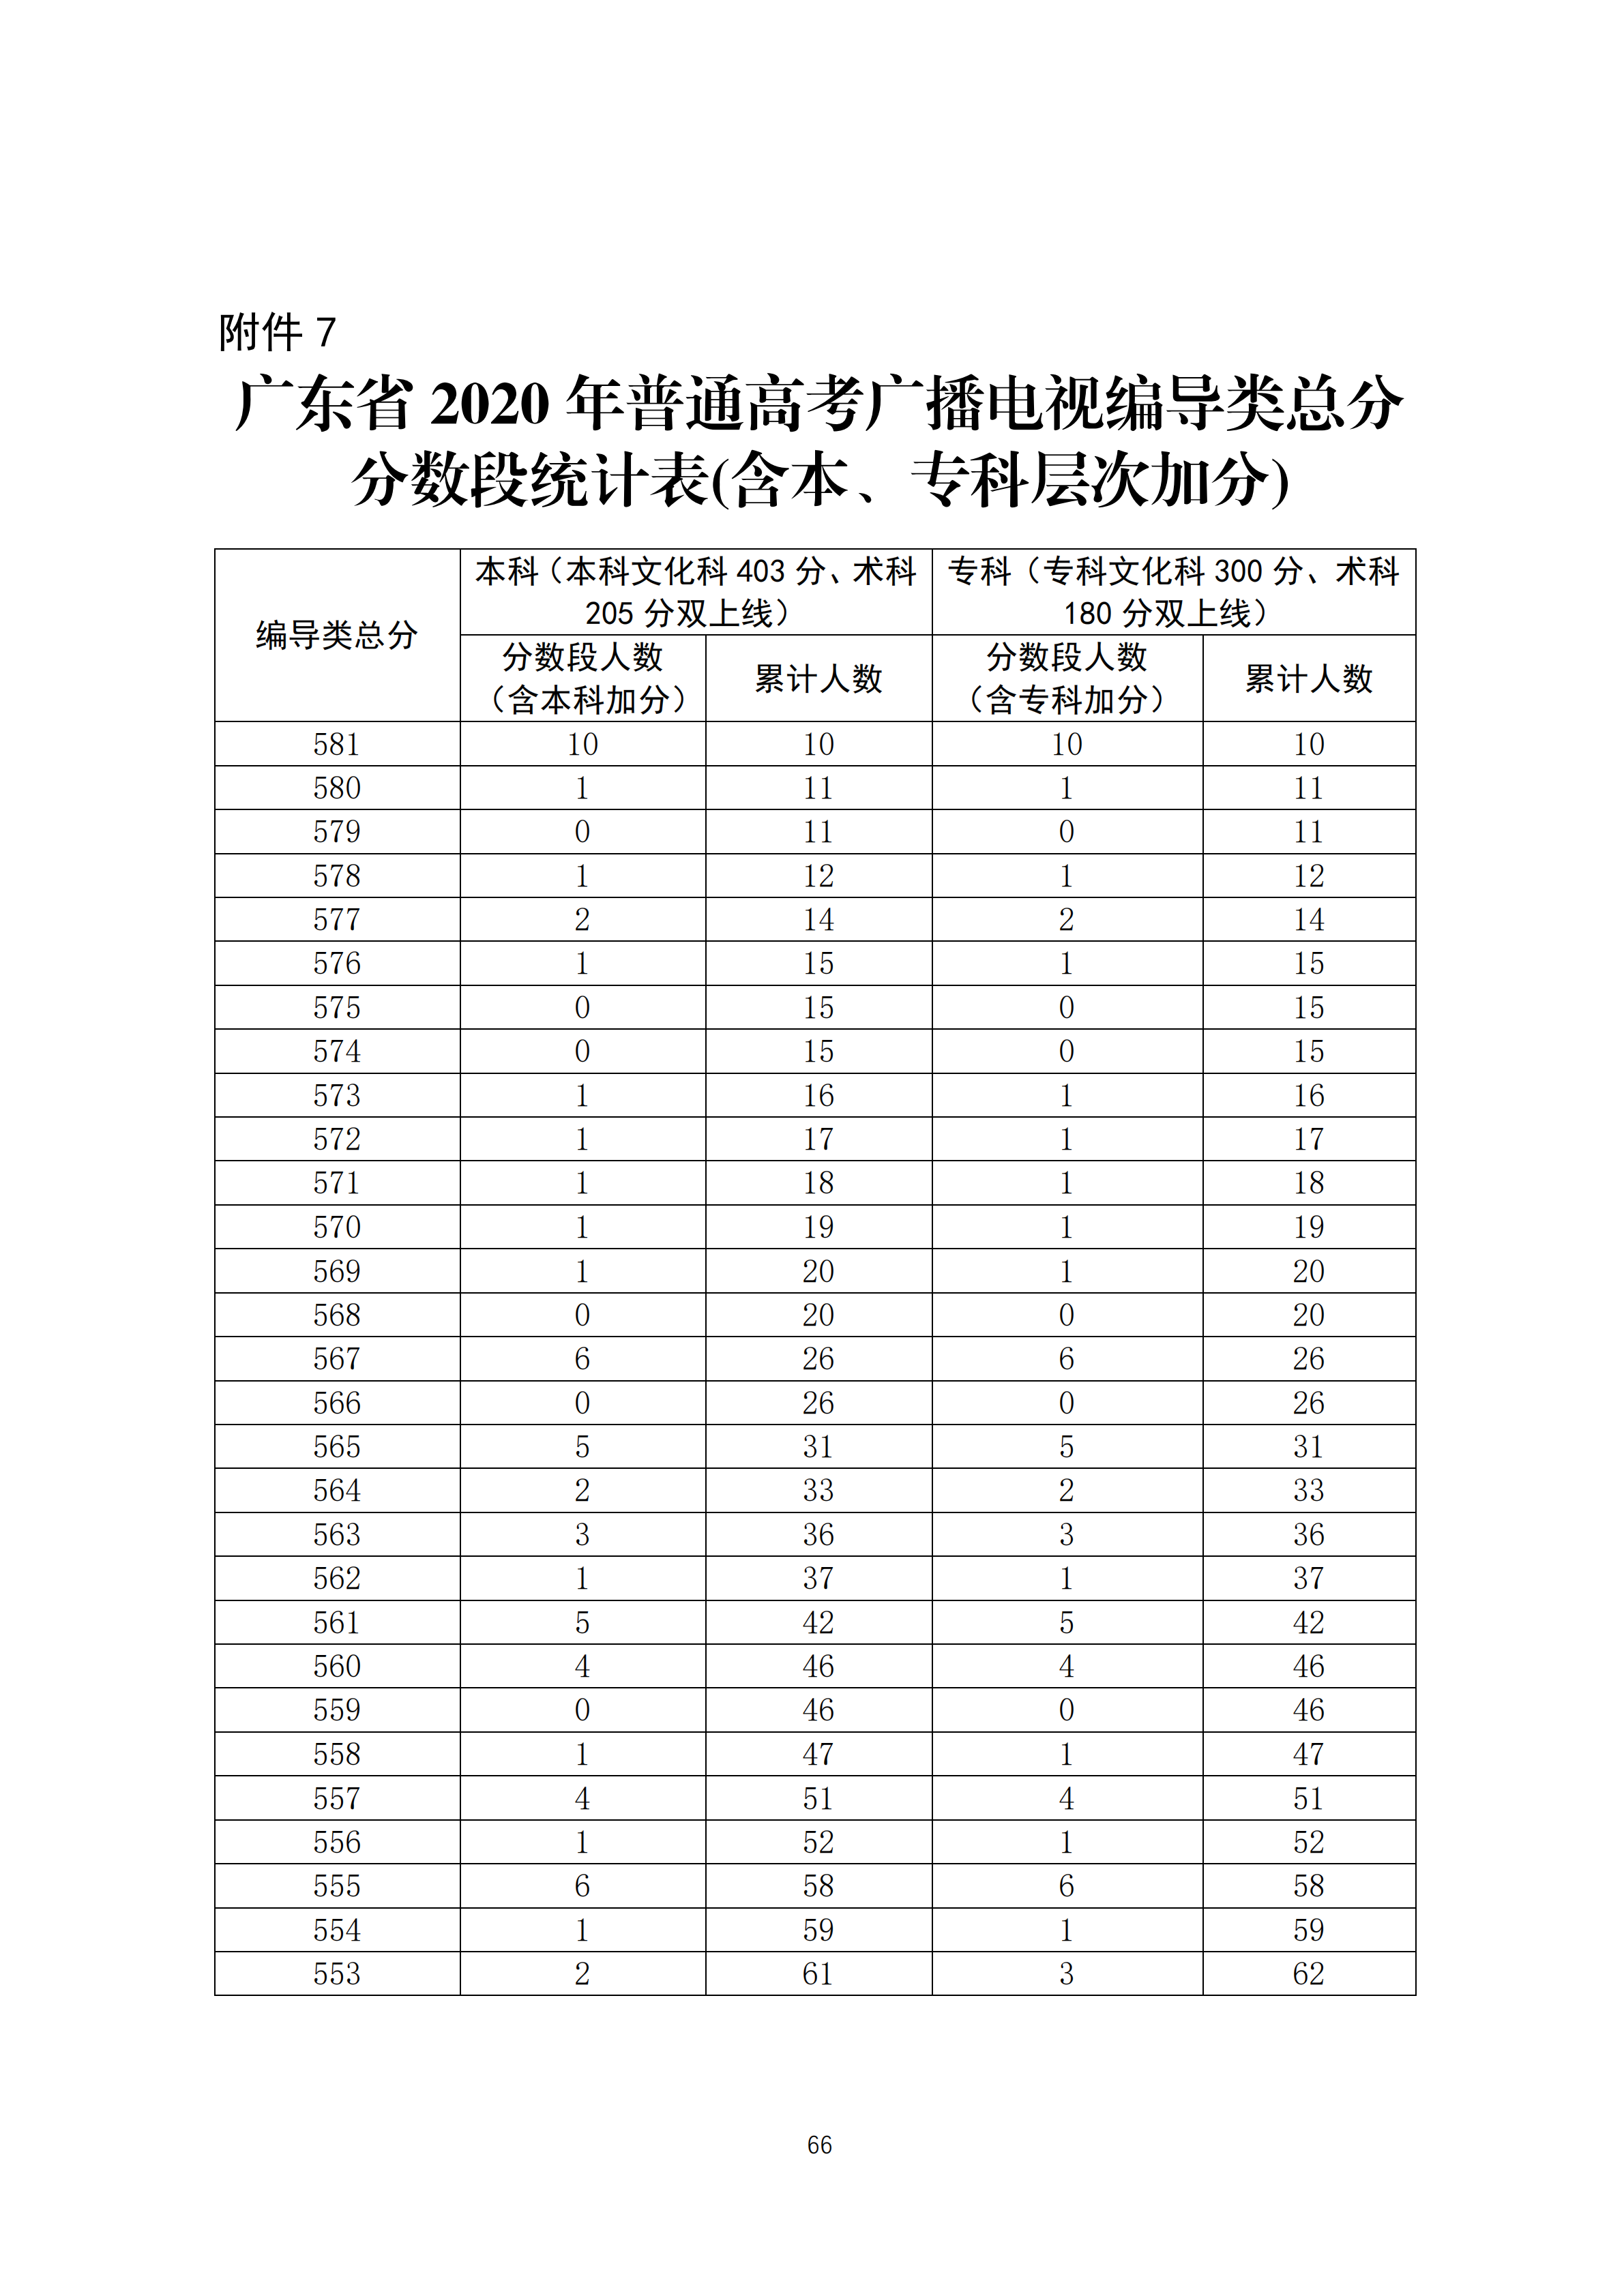 2020广东高考一分一段表 广播电视编导类成绩排名及累计考生人数